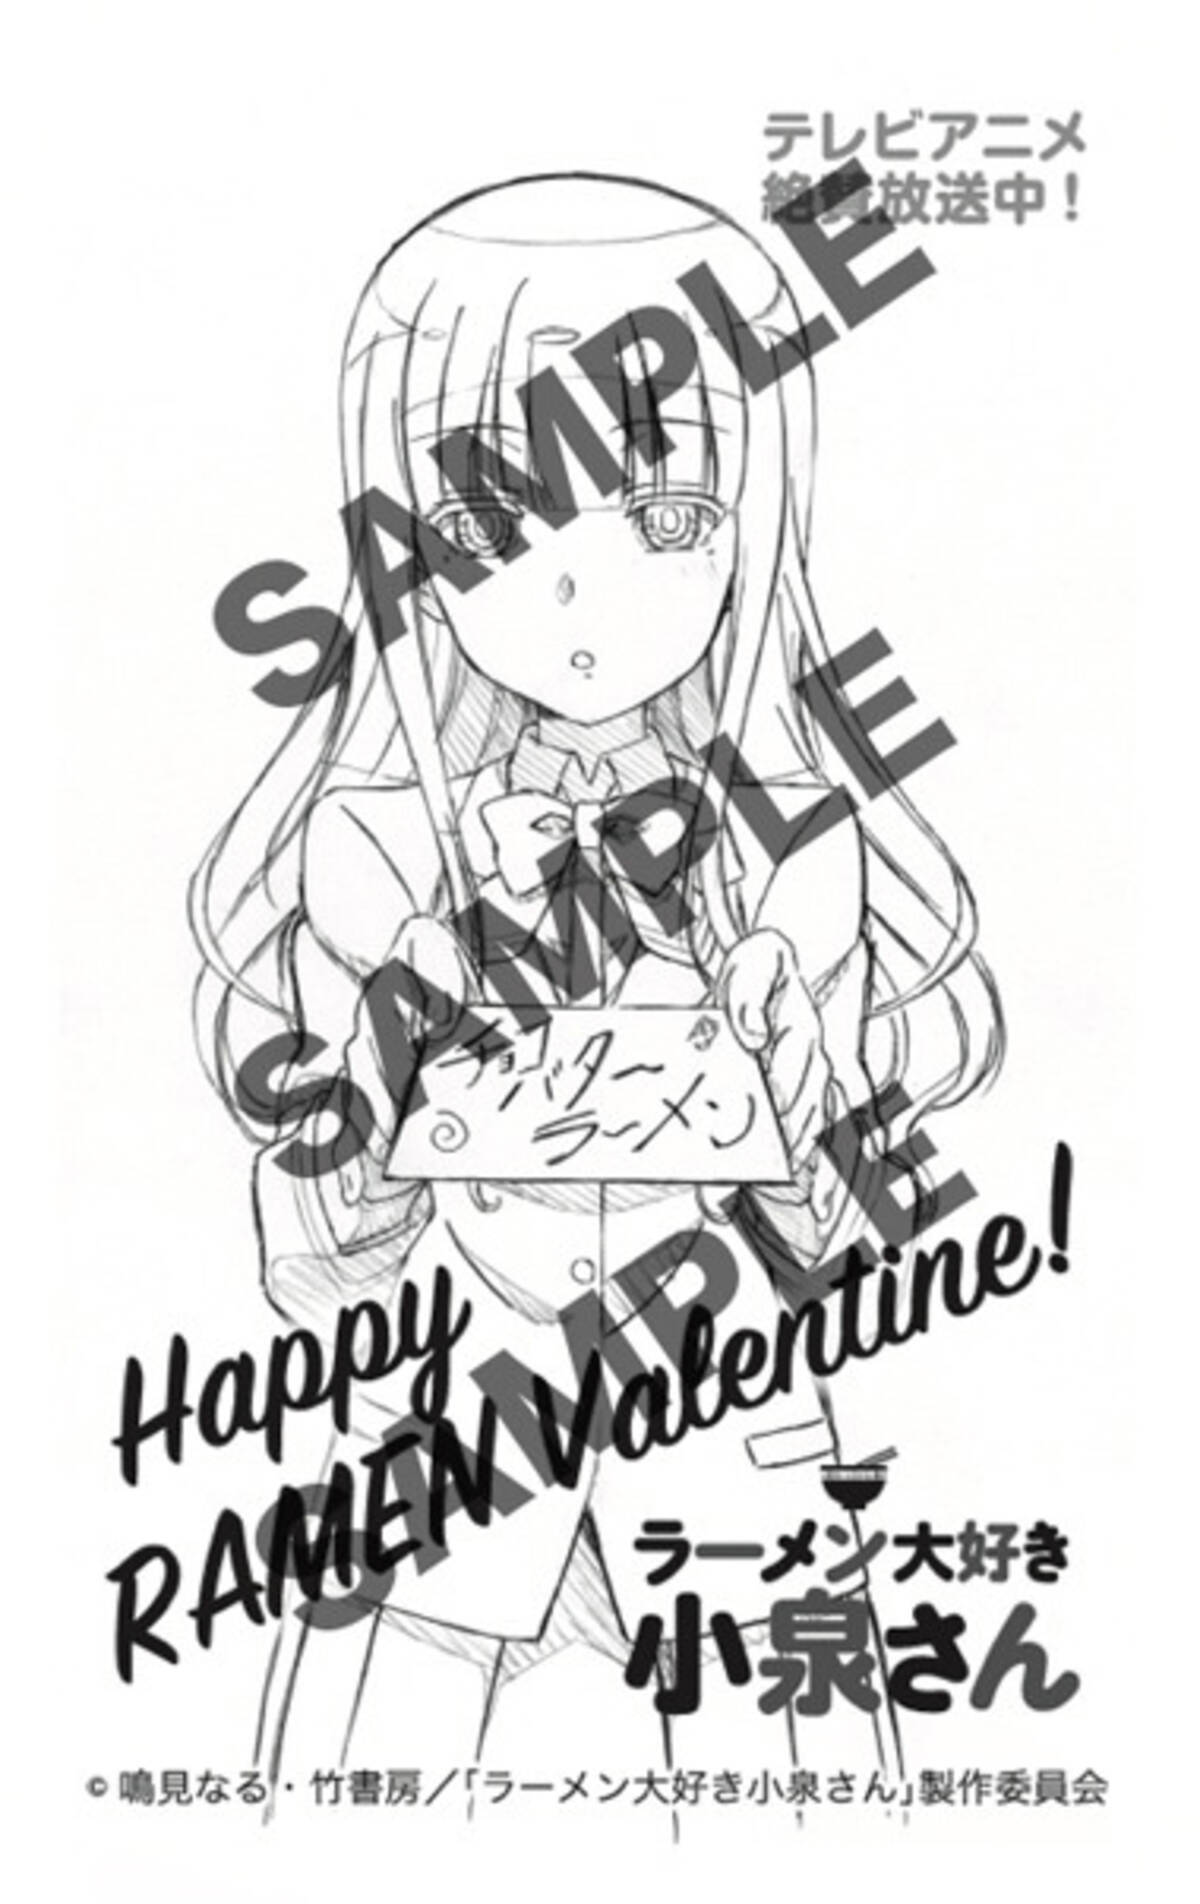 ラーメン大好き小泉さん 小泉さんはバレンタインでもブレない 義理ラーメン イベント実施 18年2月13日 エキサイトニュース